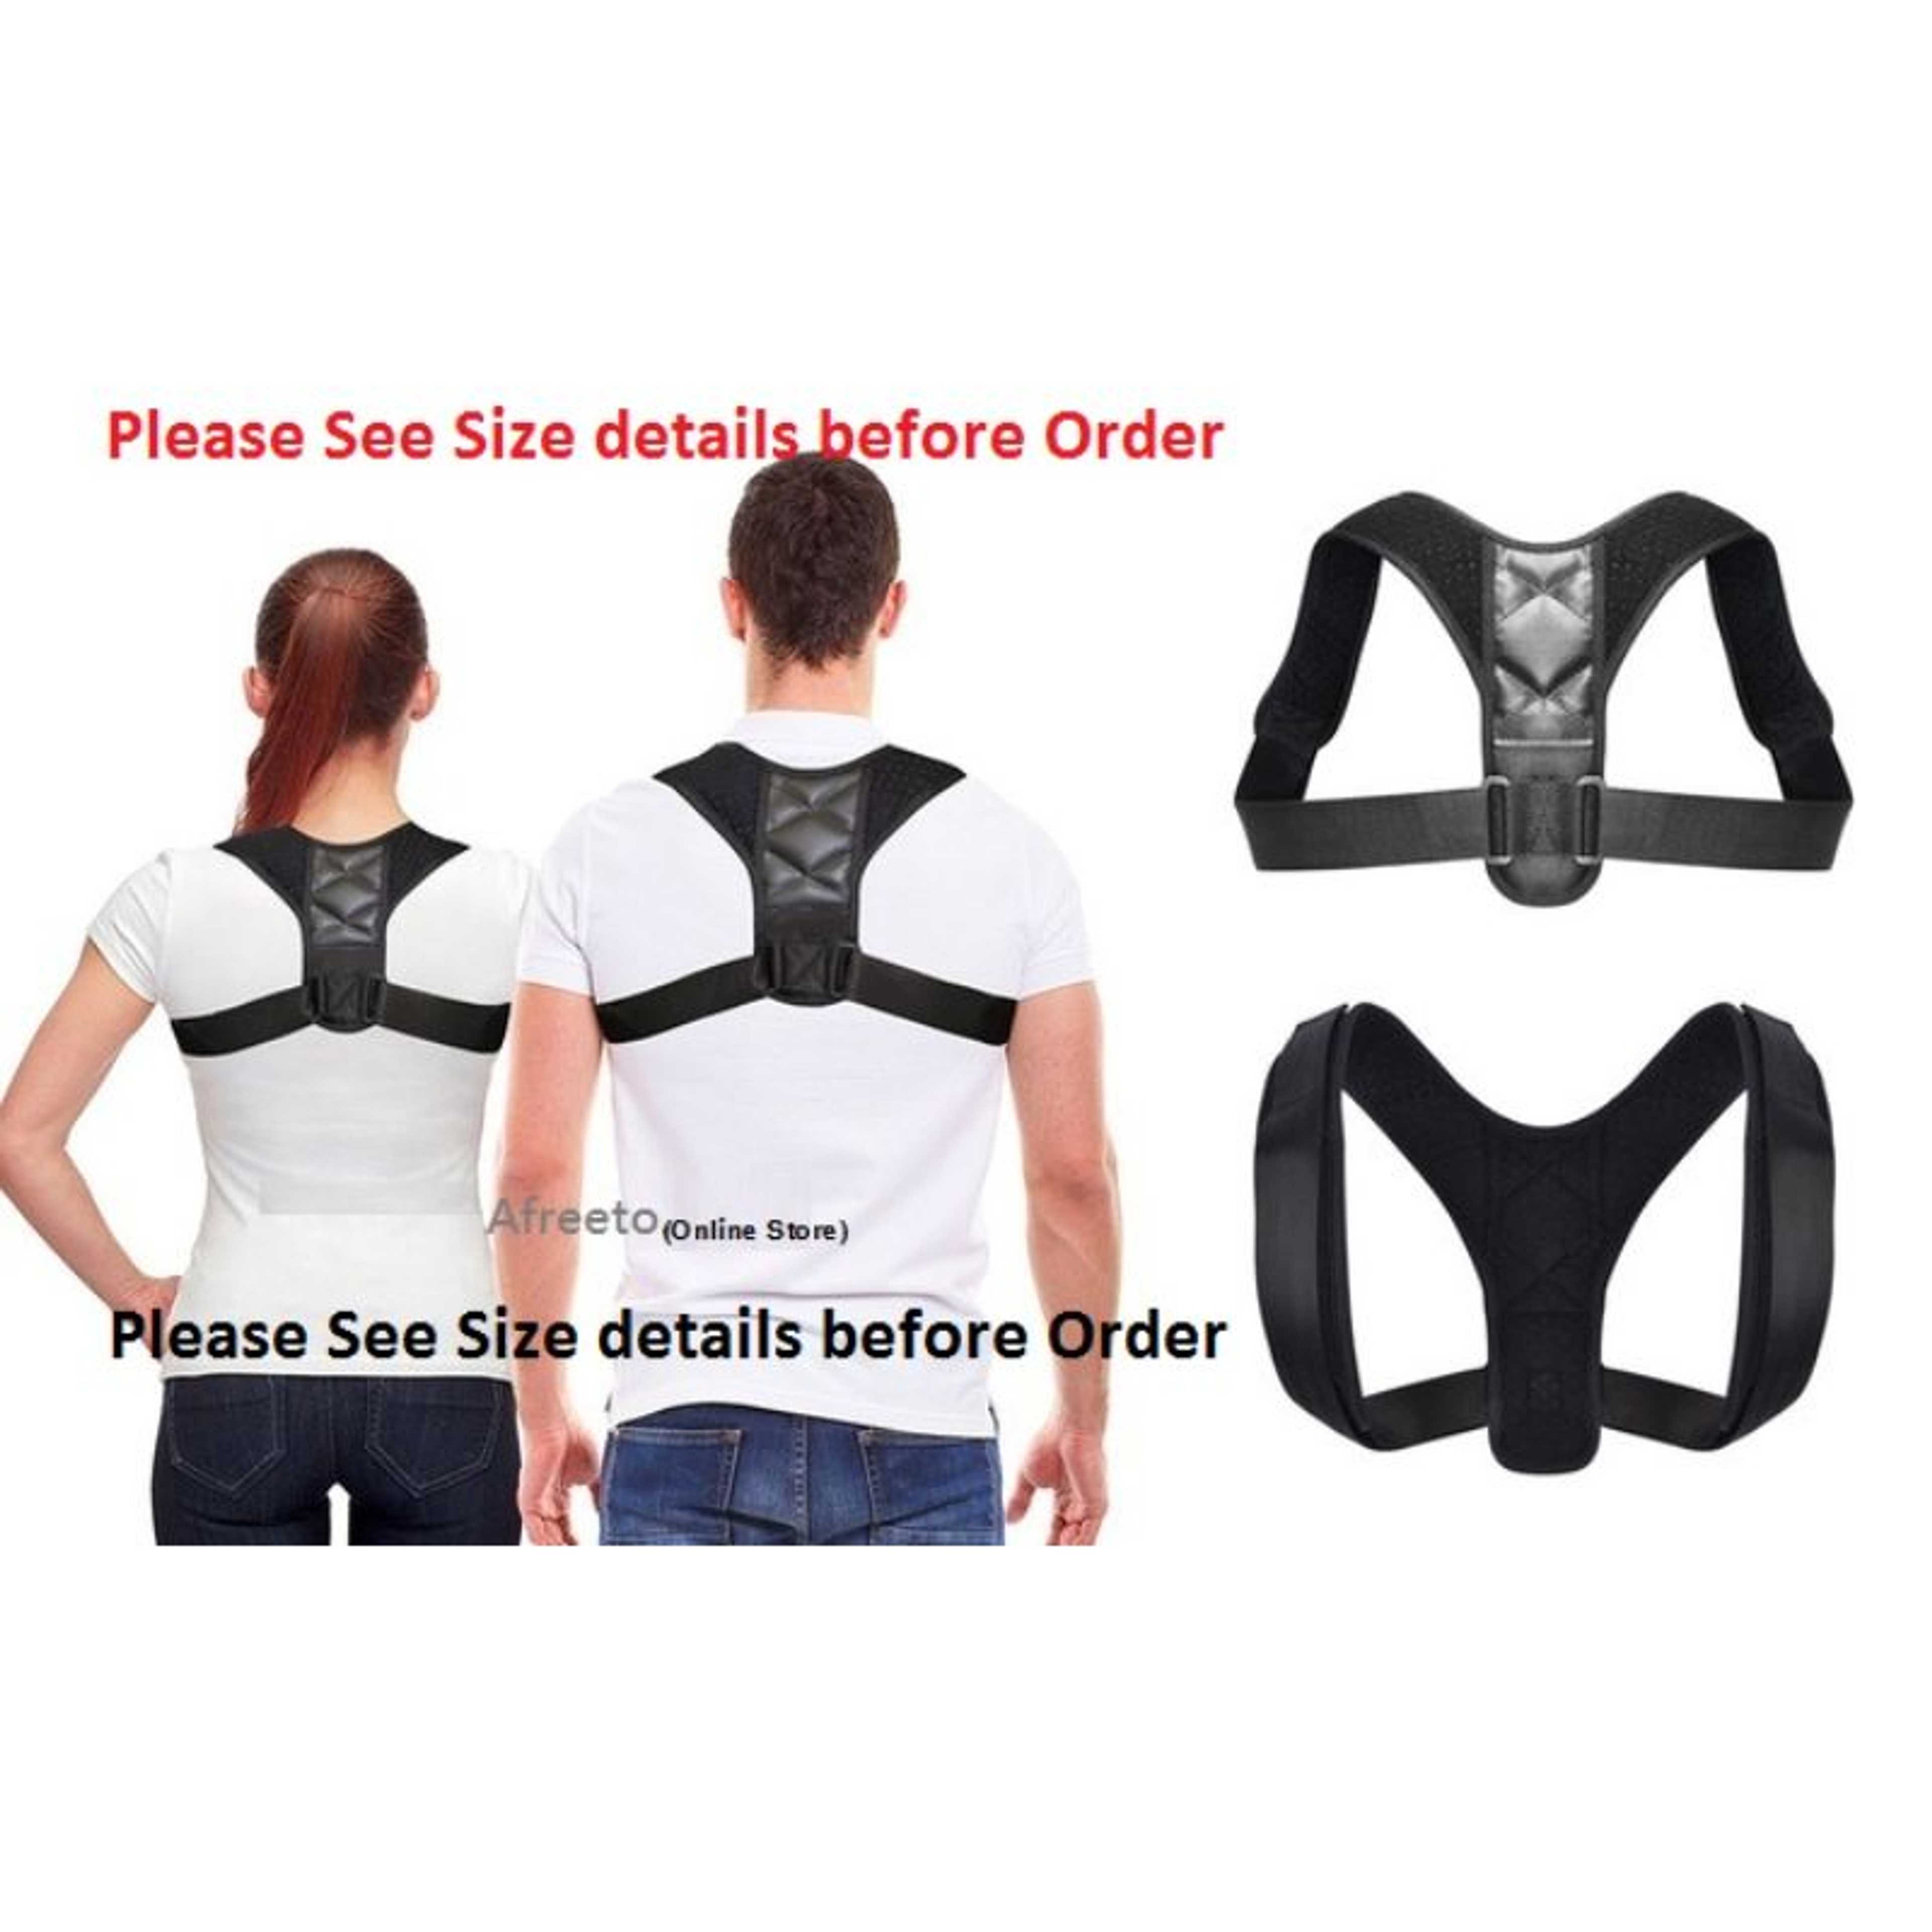 "Body Posture Corrector Belt / Spine Shoulder Support "